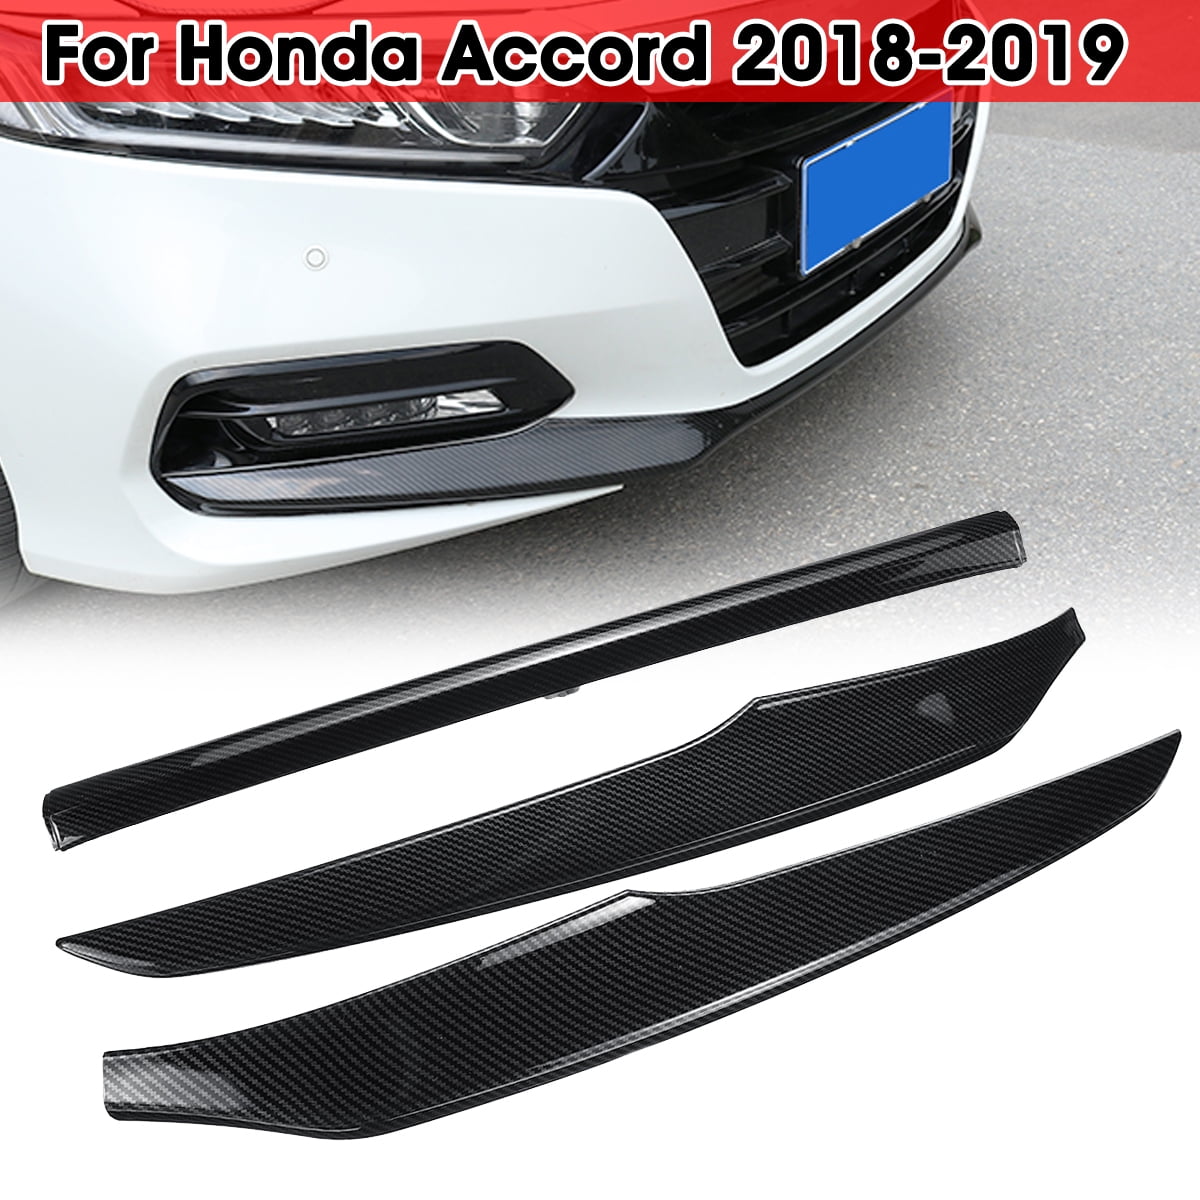 Carbon Fiber Front Bumper Lip Protection Cover Trim 3pcs for Honda Accord 2018